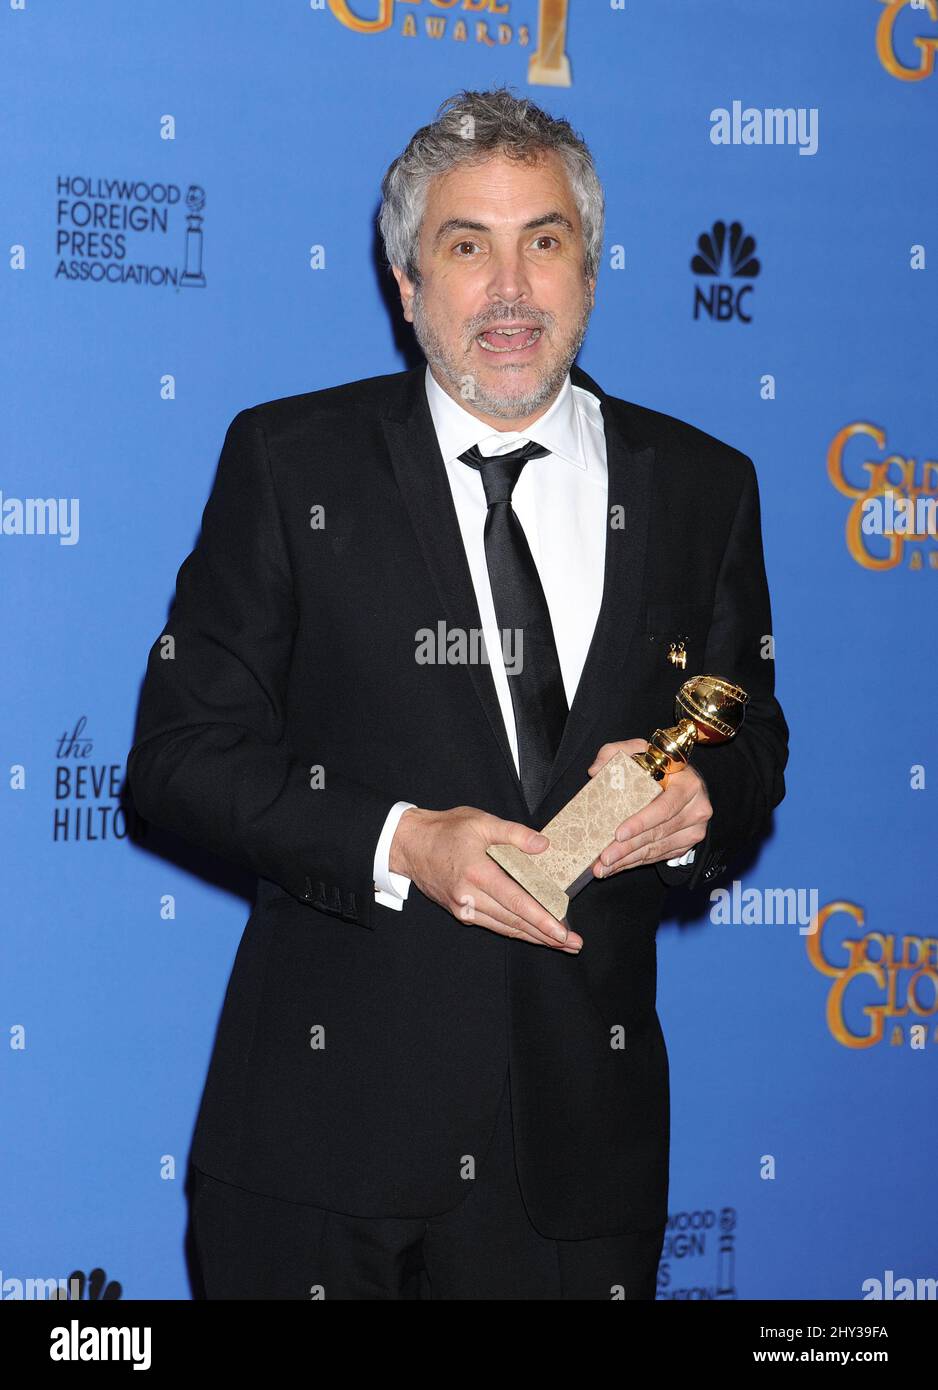 Alfonso Cuaron si presenta nella sala stampa con il premio come miglior direttore per 'Gravity' ai 71st Golden Globe Awards al Beverly Hilton Hotel di domenica 12 gennaio 2014, a Beverly Hills, California. Foto Stock